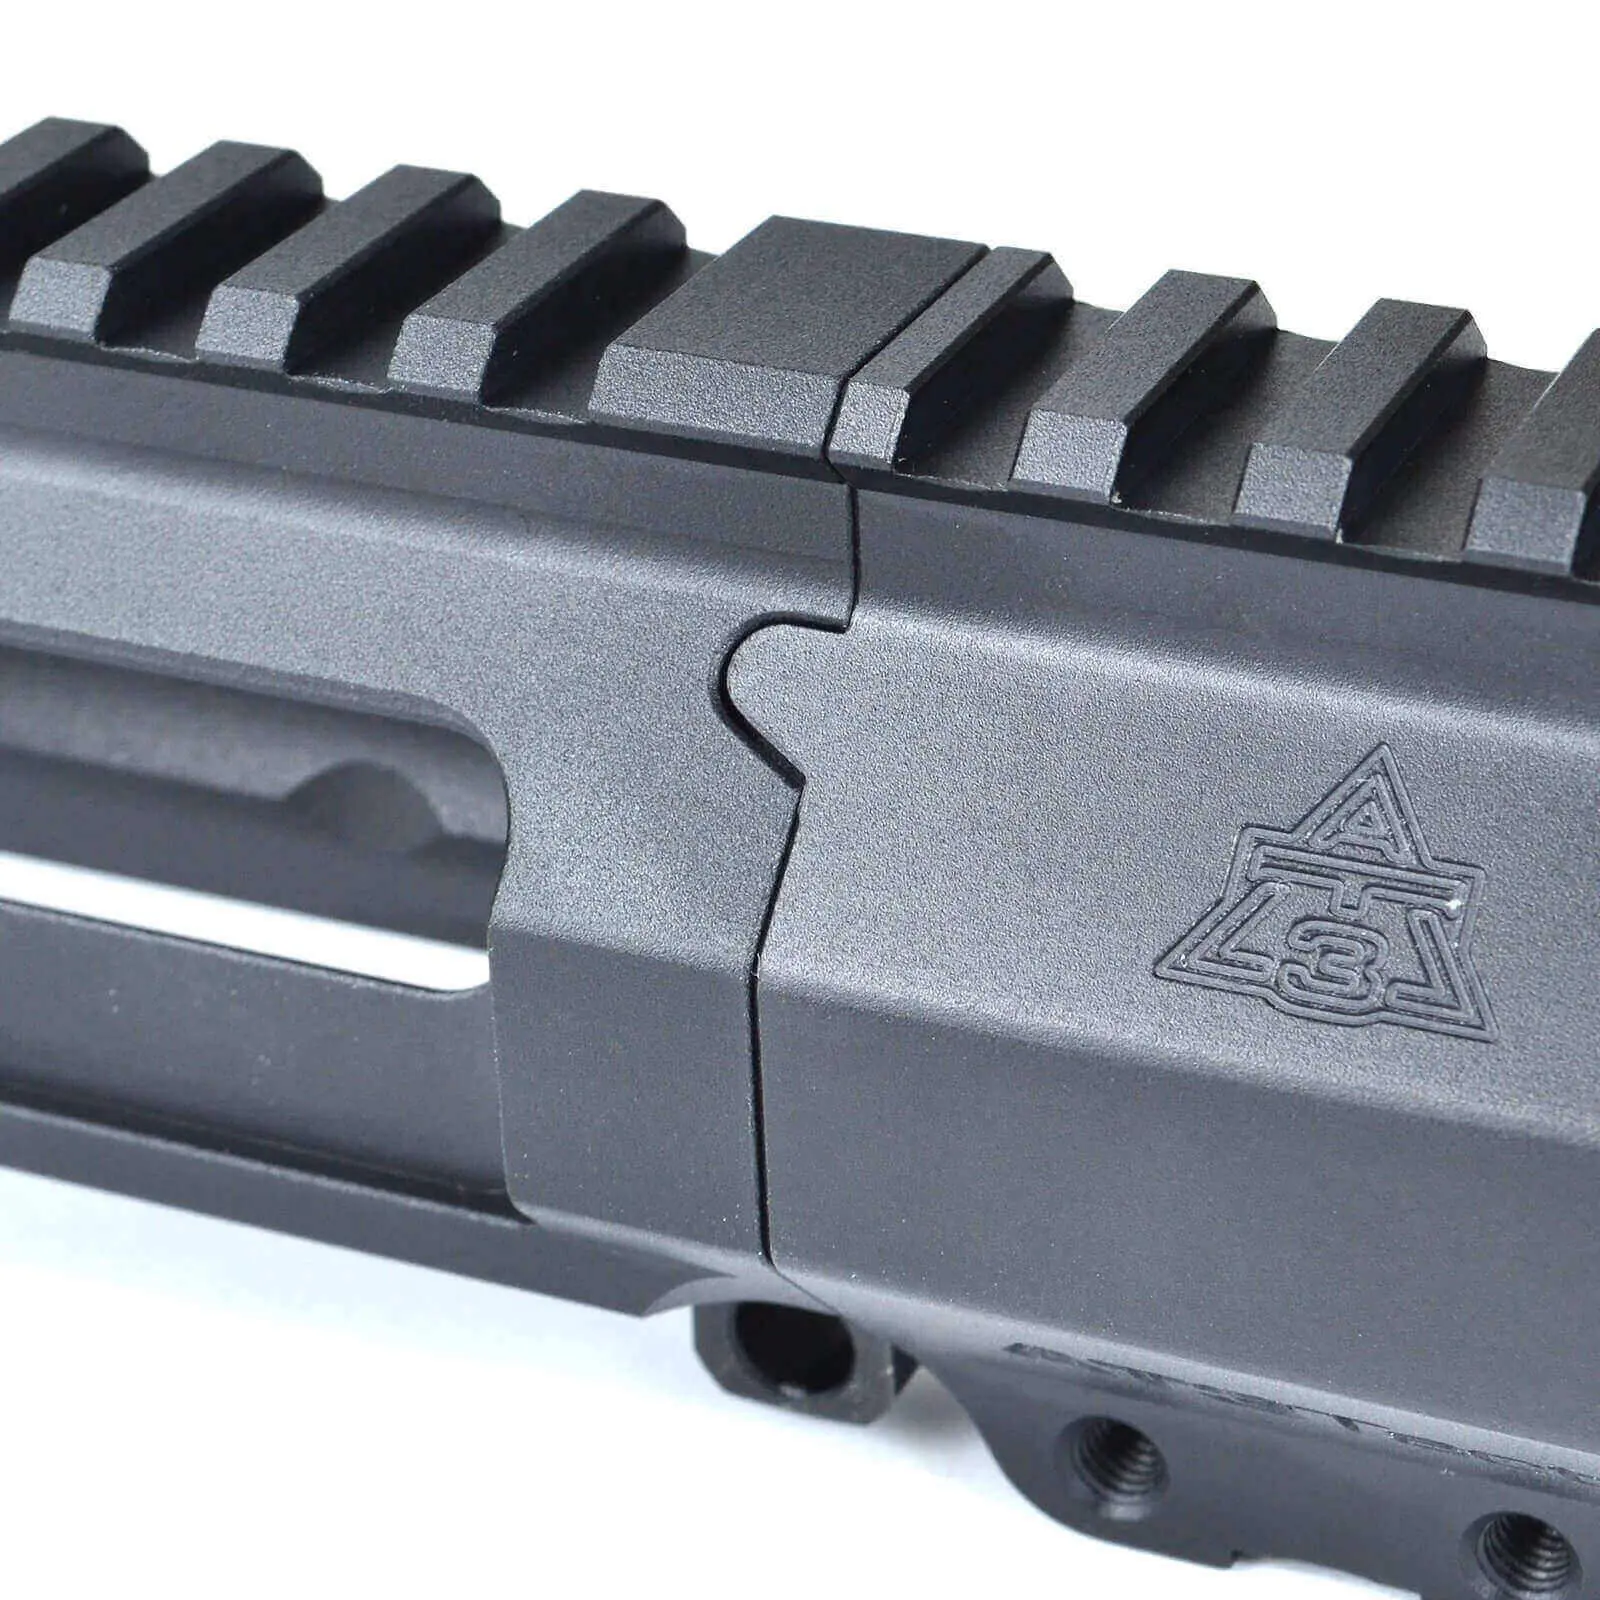 AT3 Tactical AR-15 Slick Side Billet Upper Receiver